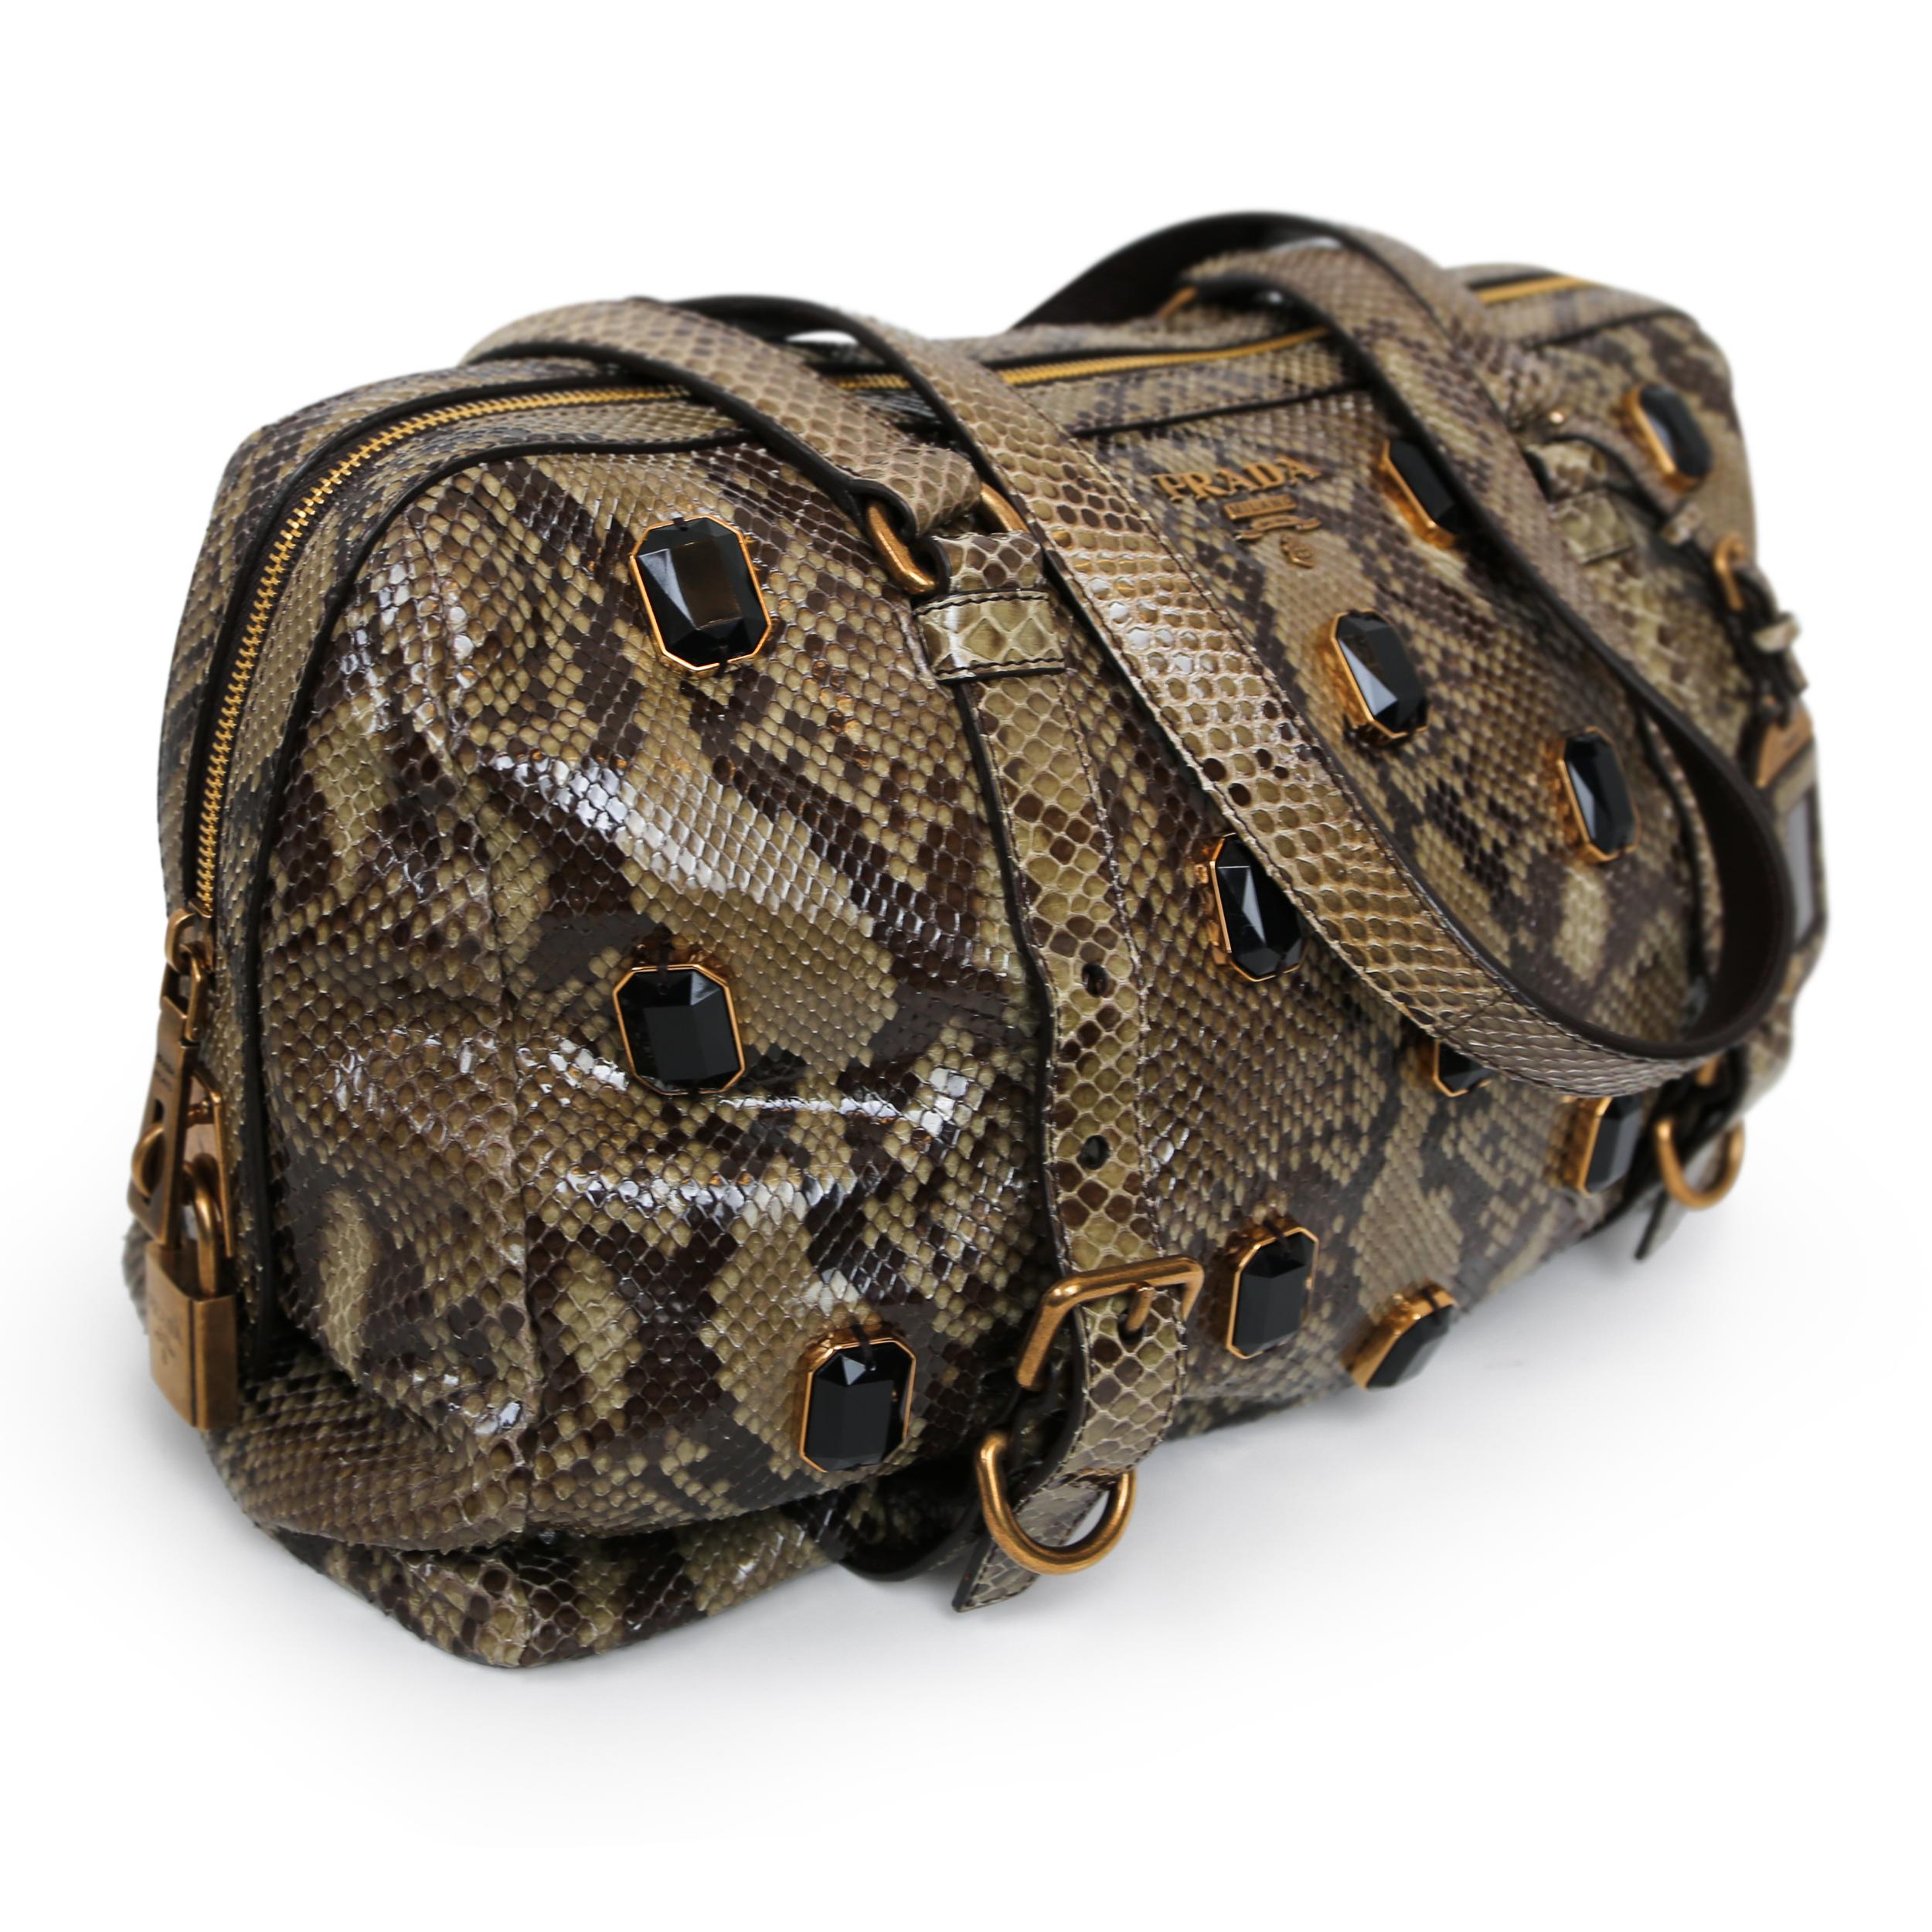 Diese exquisite Tasche von Prada besticht durch luxuriöses Pythonleder und goldene Beschläge. Das mit Juwelen besetzte Vorhängeschloss und die verzierten Perlen verleihen dieser praktischen und vielseitigen Schulterhandtasche einen Hauch von